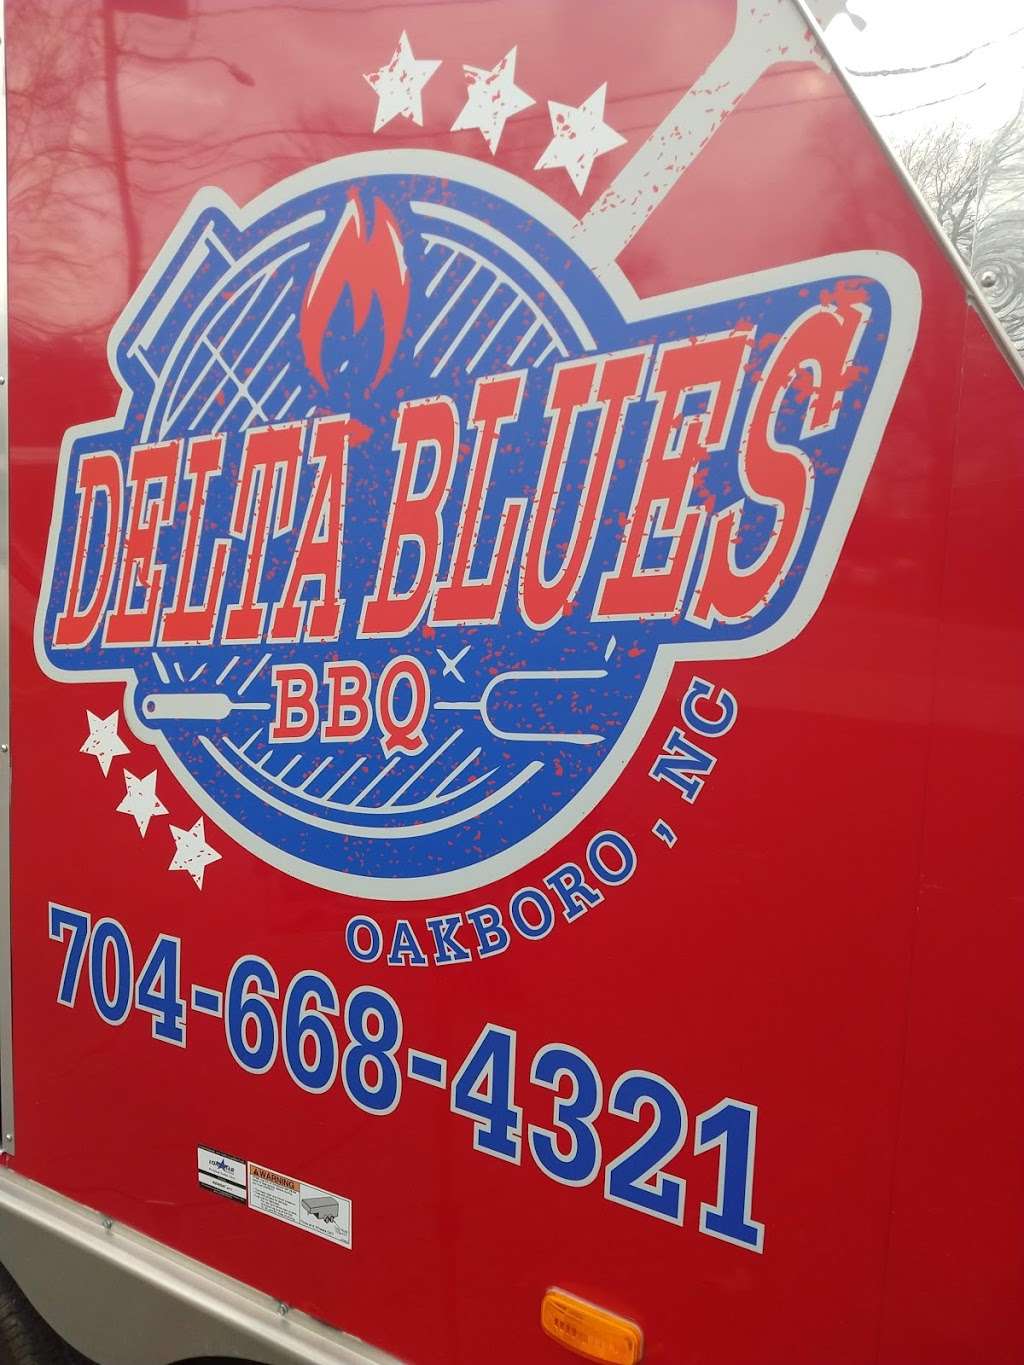 Delta Blues BBQ | 402 N Main St, Oakboro, NC 28129 | Phone: (704) 668-4321